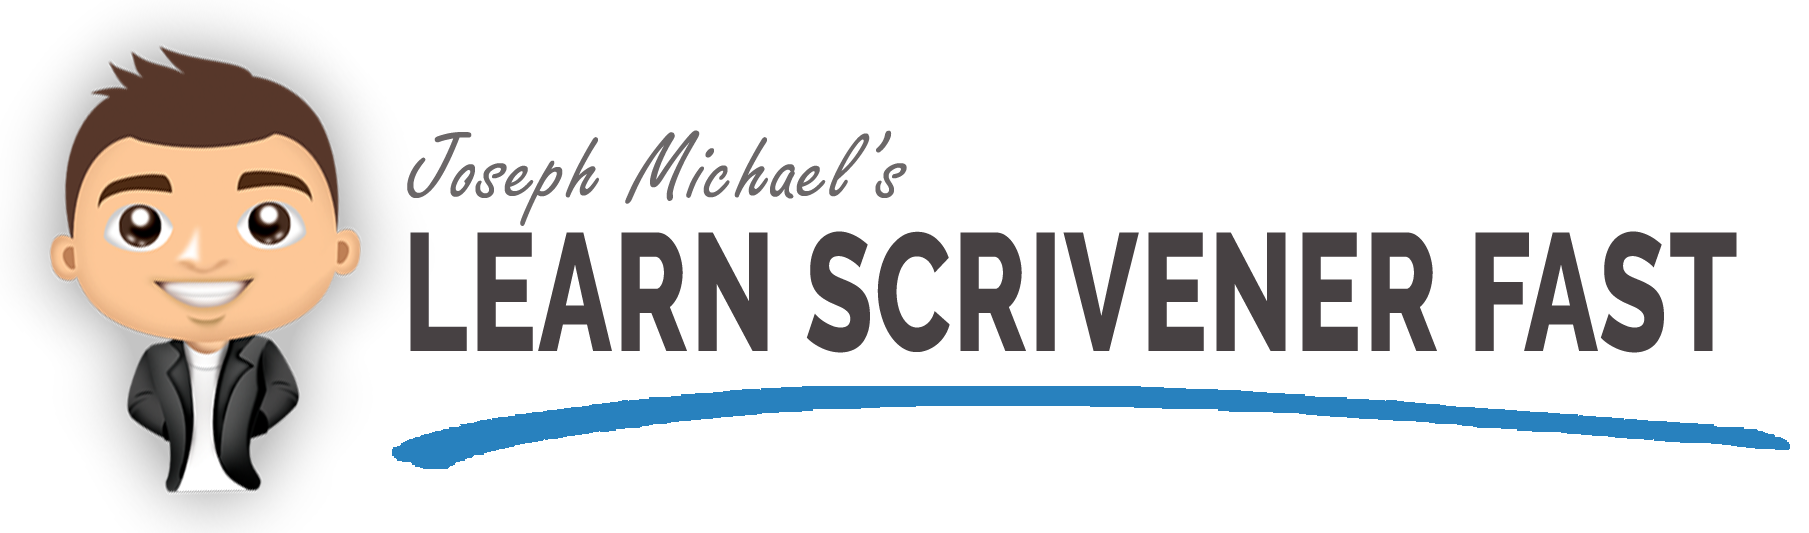 www.learn-scrivener-fast-com jospeph-michael logo